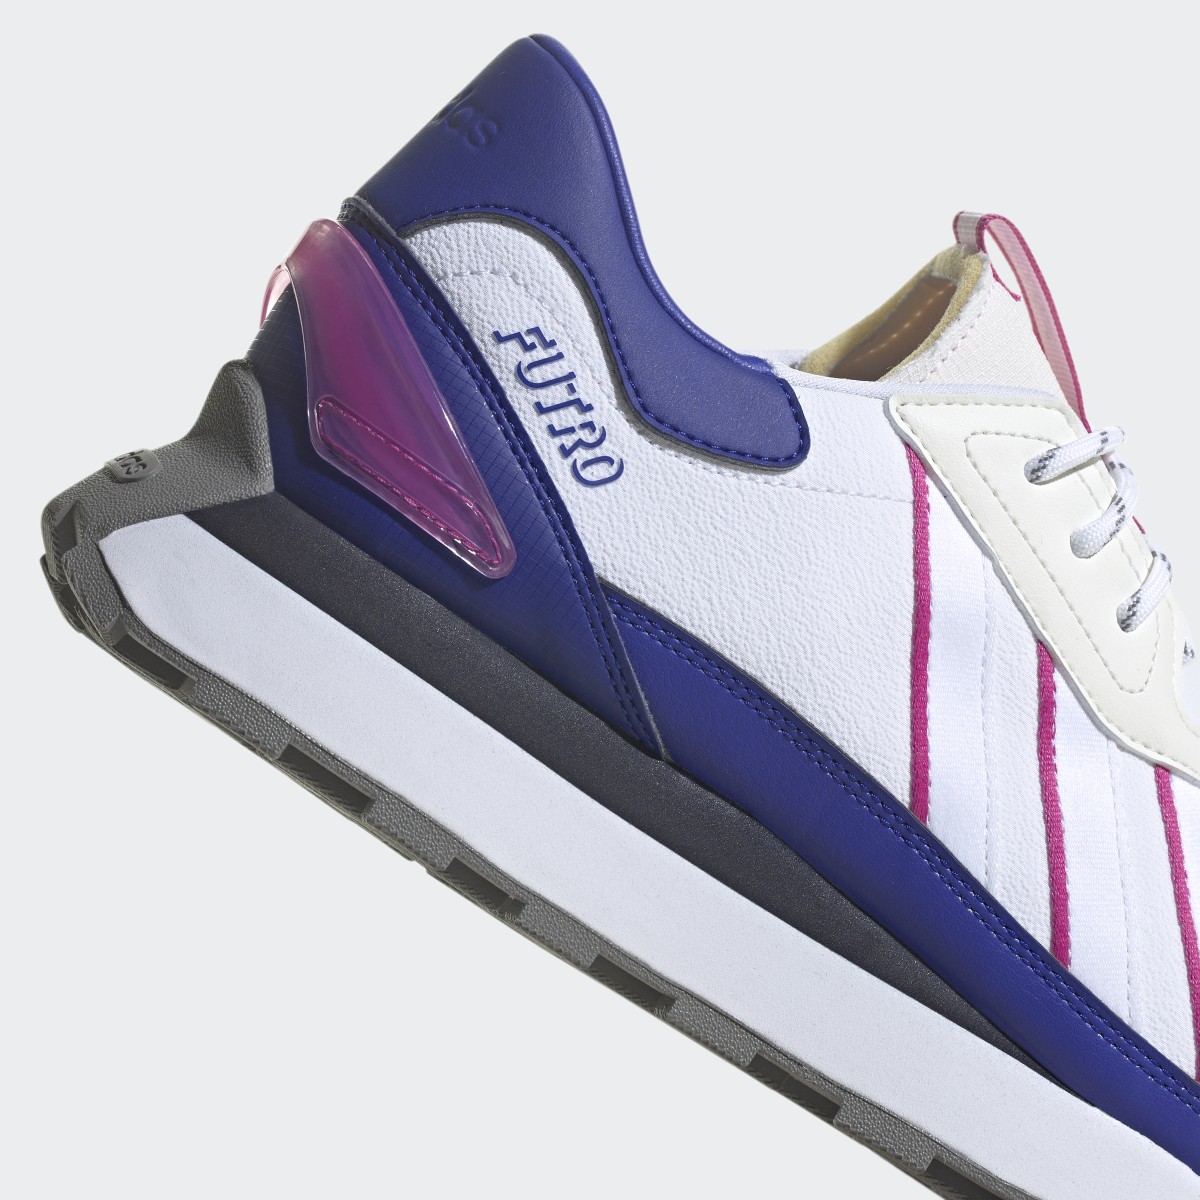 Adidas Futro Mixr Shoes. 10